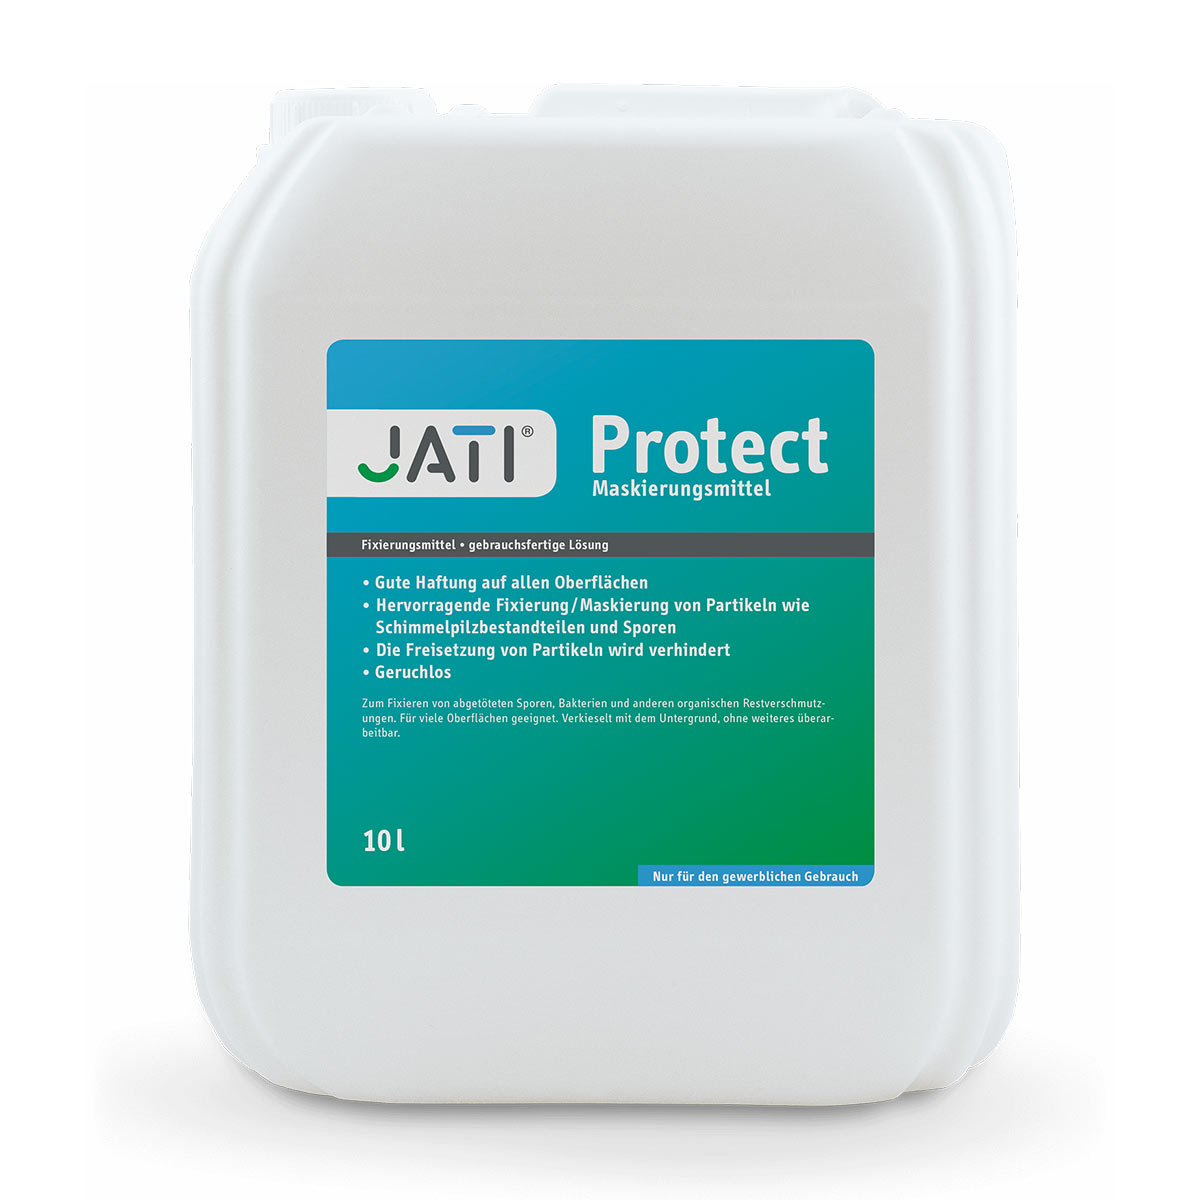 Maskierungsmittel, JATI Protect, für ca. 100 m2